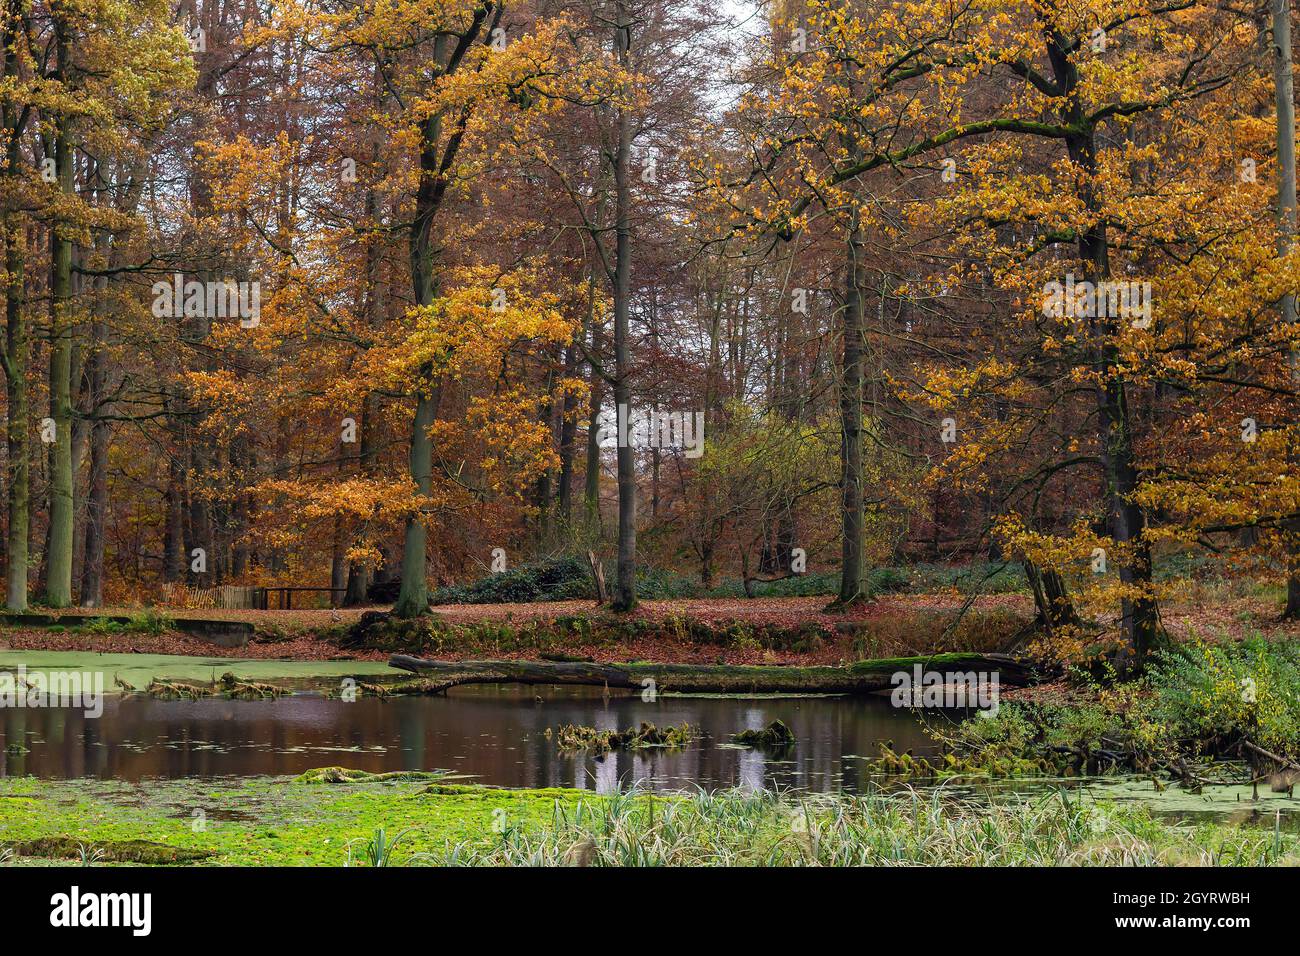 Étang dans la forêt européenne de hêtre ancienne (Fagus sylvatica) avec feuillage décidus coloré en automne.Forêt de Sonian, Belgique Banque D'Images